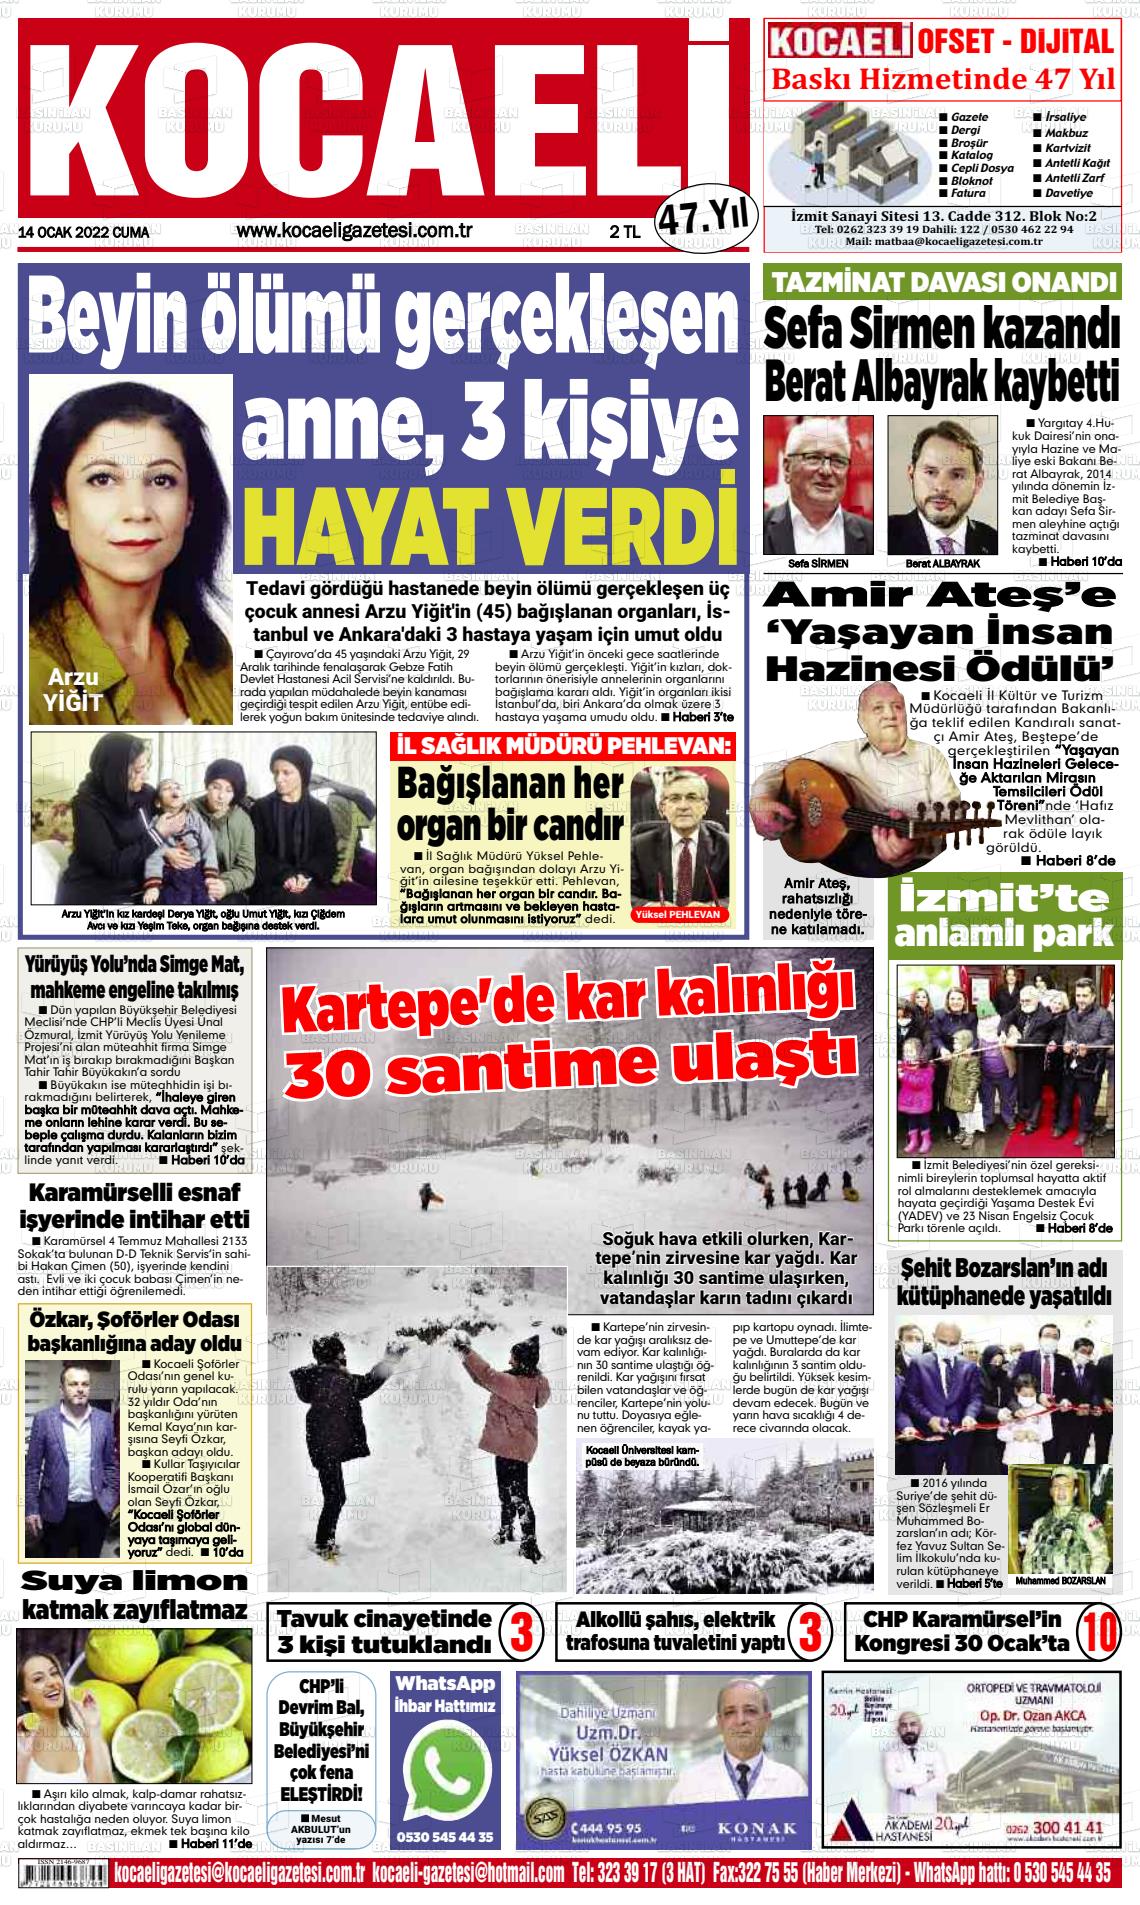 14 Ocak 2022 Kocaeli Gazete Manşeti